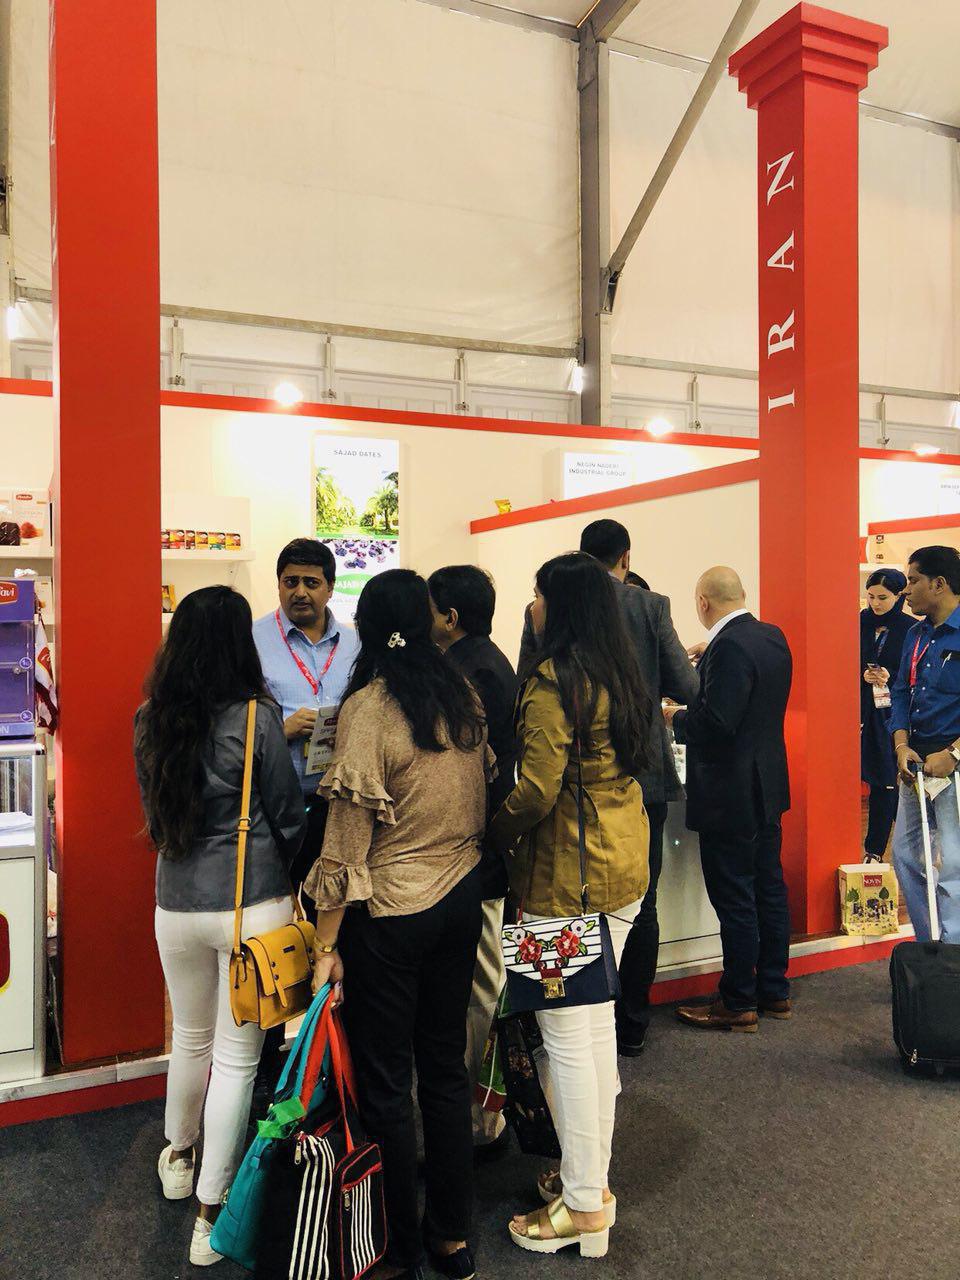 نمایشگاه مواد غذایی دبی ، یکی از قدیمیترین و در واقع مهمترین نمایشگاهی است که در زمینه مواد غذایی در دبی برگزار میگردد . 